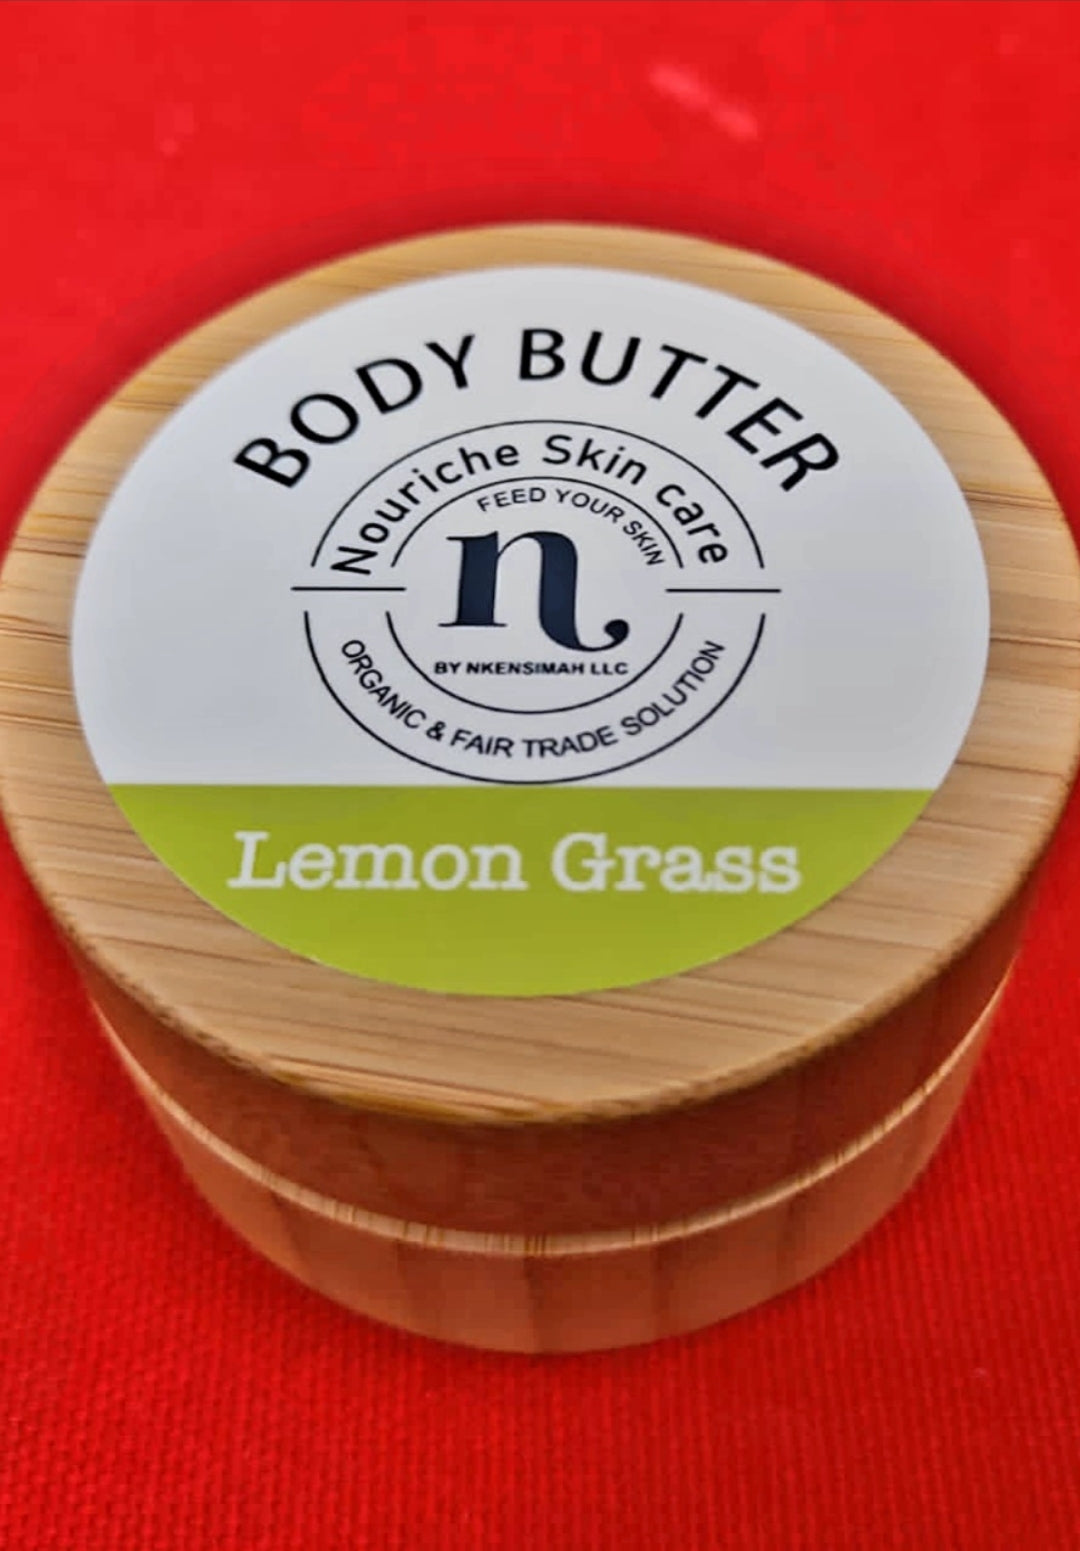 Nouriche Skin Care - Body Butter